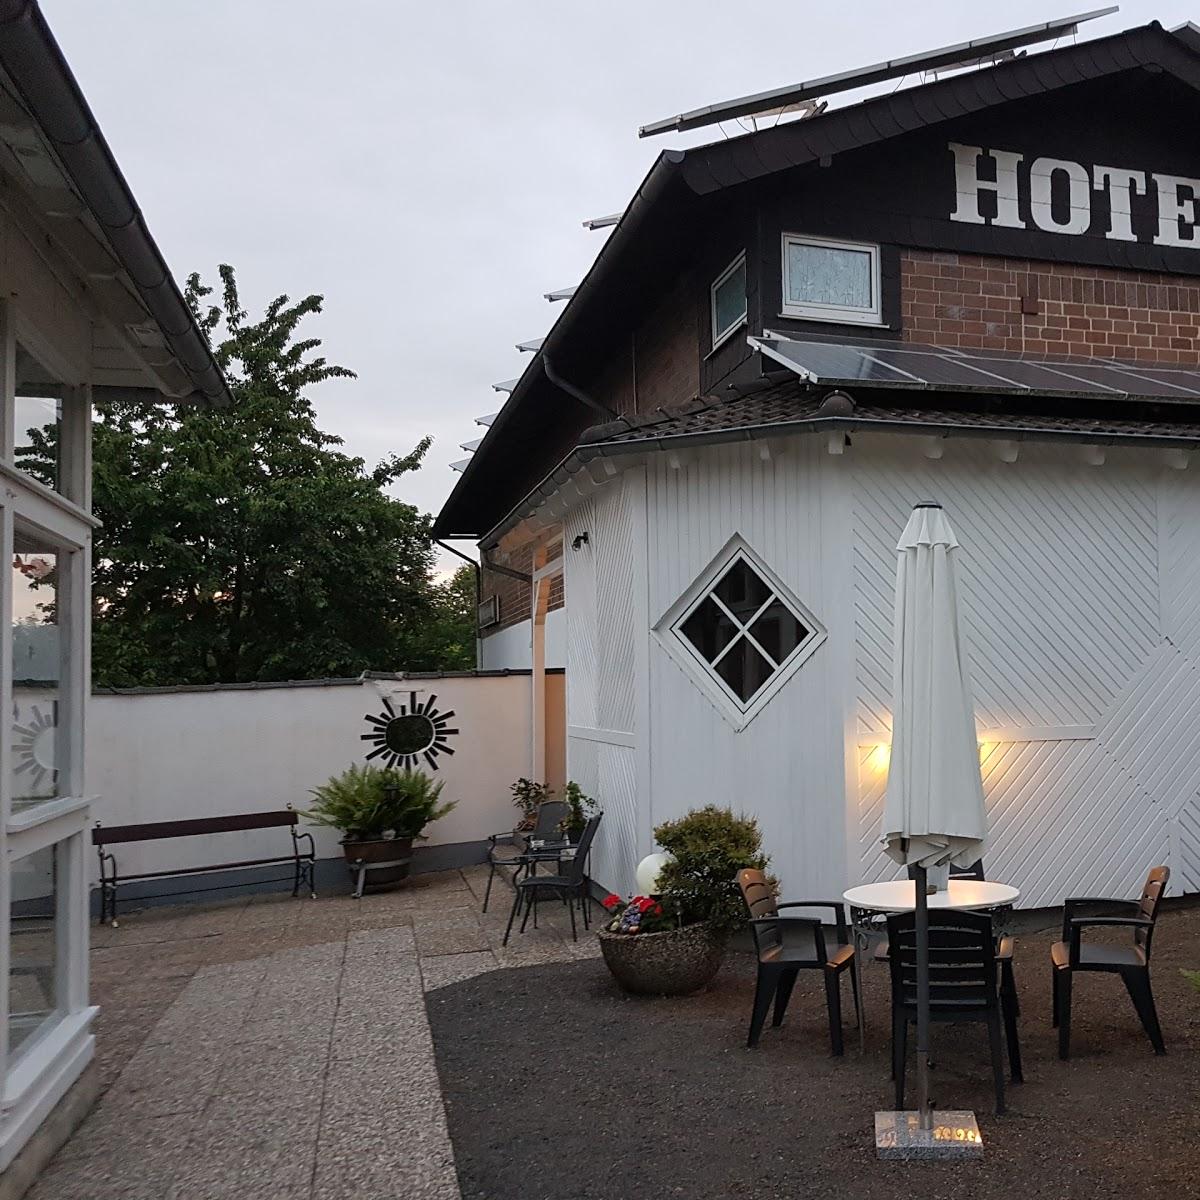 Restaurant "Hotel Felsenkeller" in Homberg (Efze)